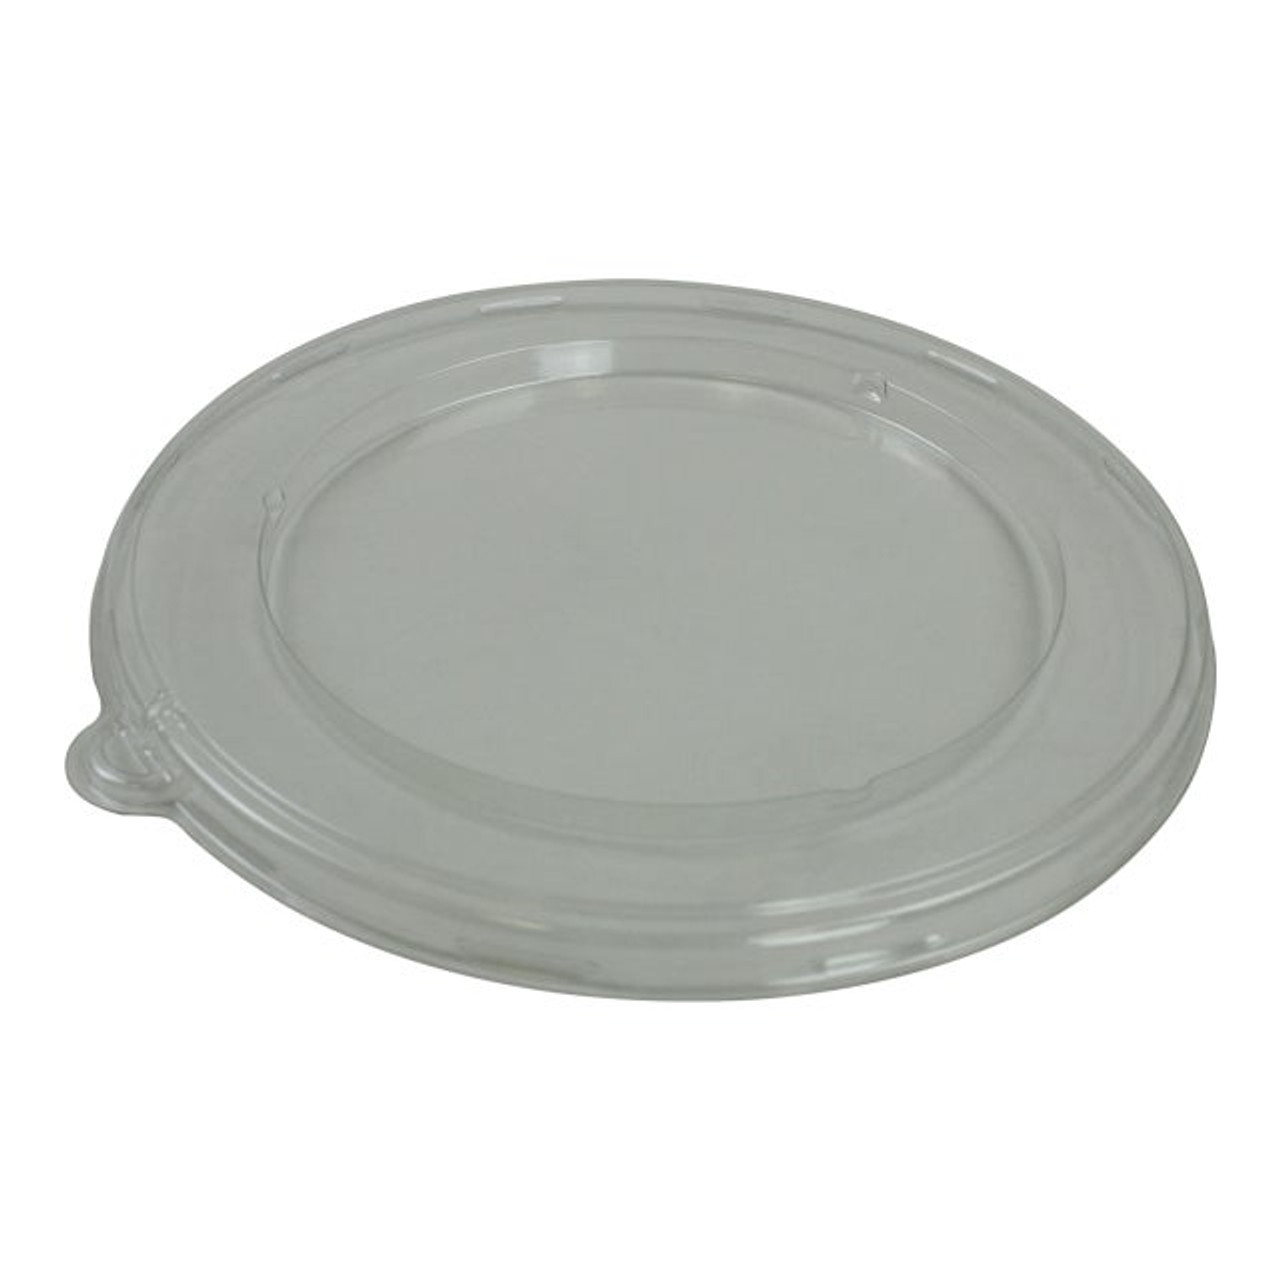 Terrapac Clear Plastic Flat Round Lids, For 32oz Pulp Bowl | 300UN/Unit, 1 Unit/Case